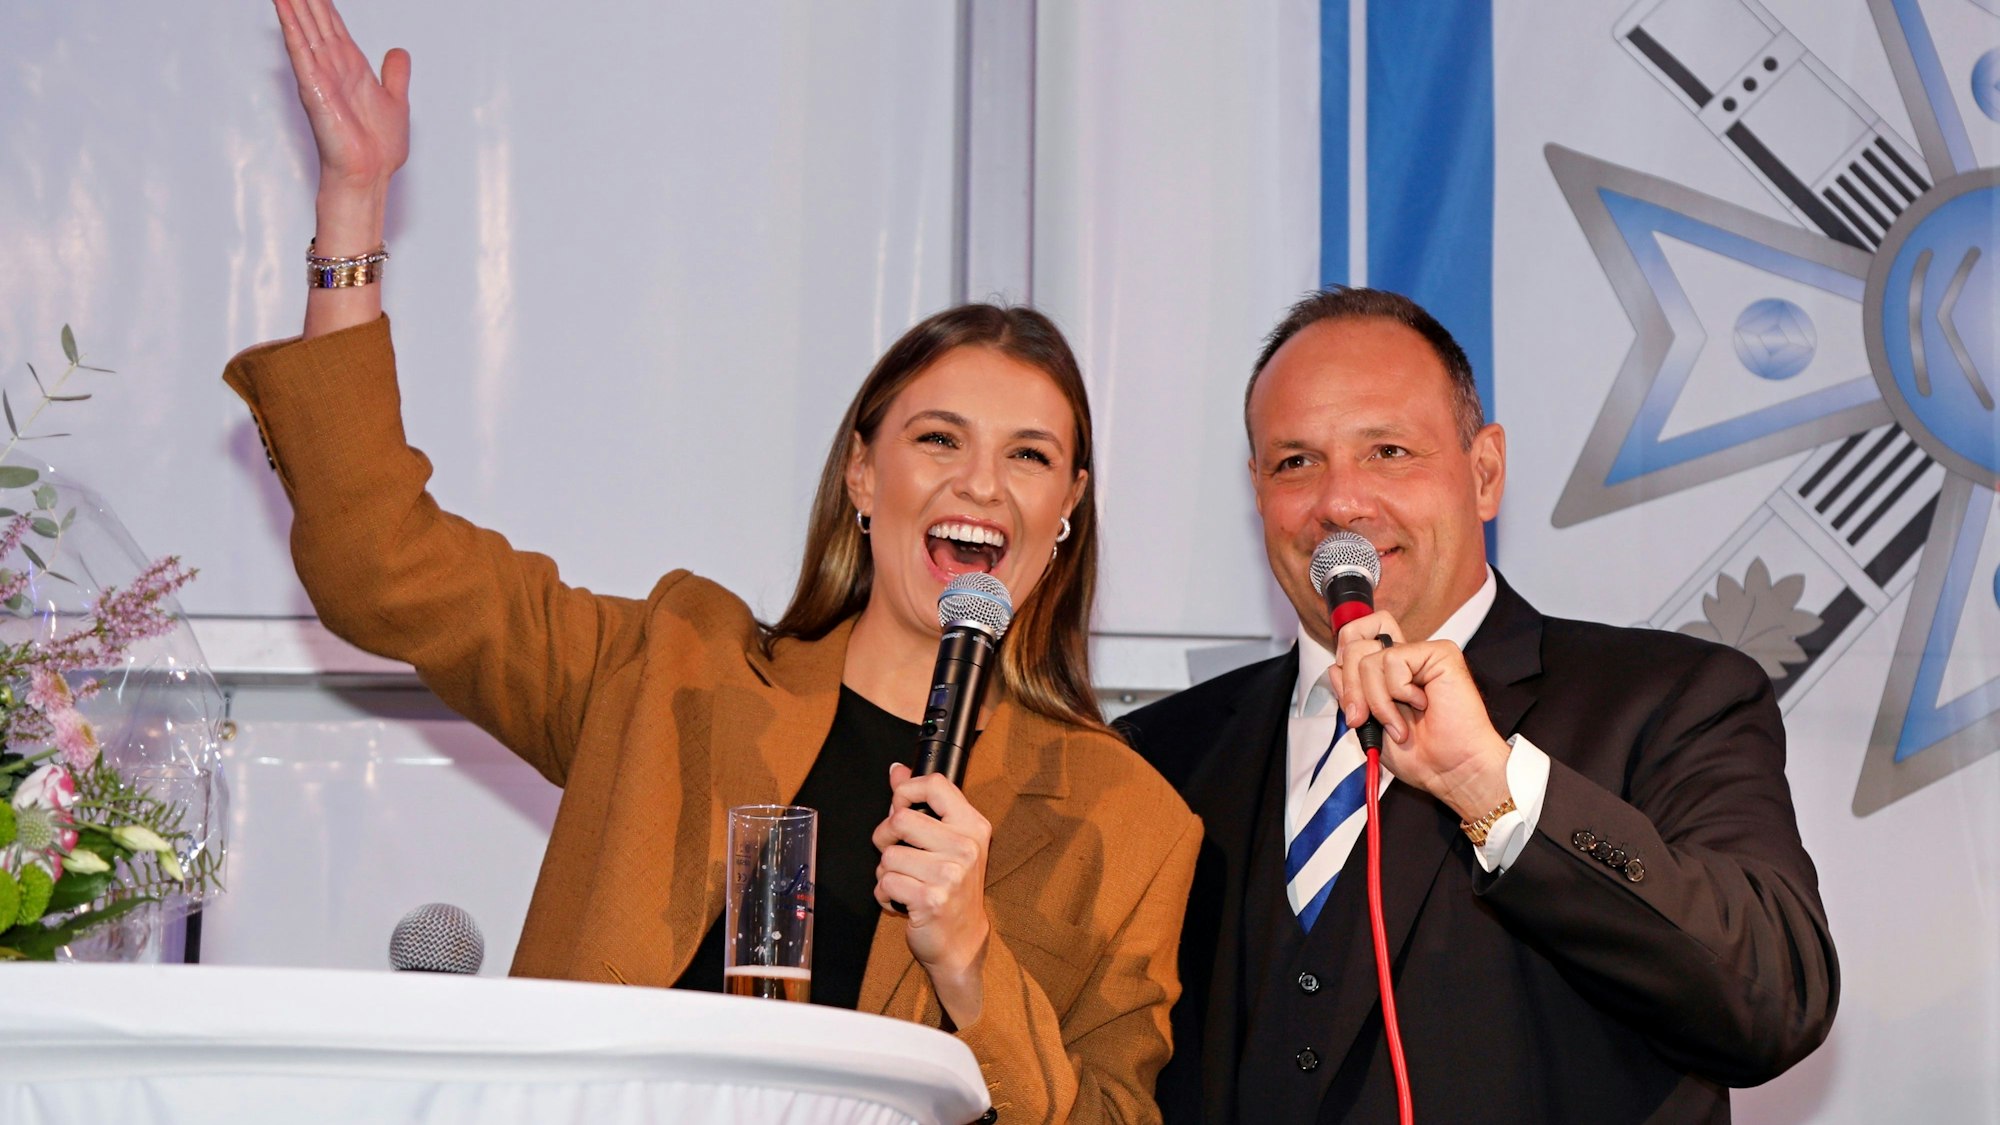 Moderatorin Laura Wontorra mit Björn Griesemann auf einer Bühne. Beide grinsen und rufen Kölle alaaf.